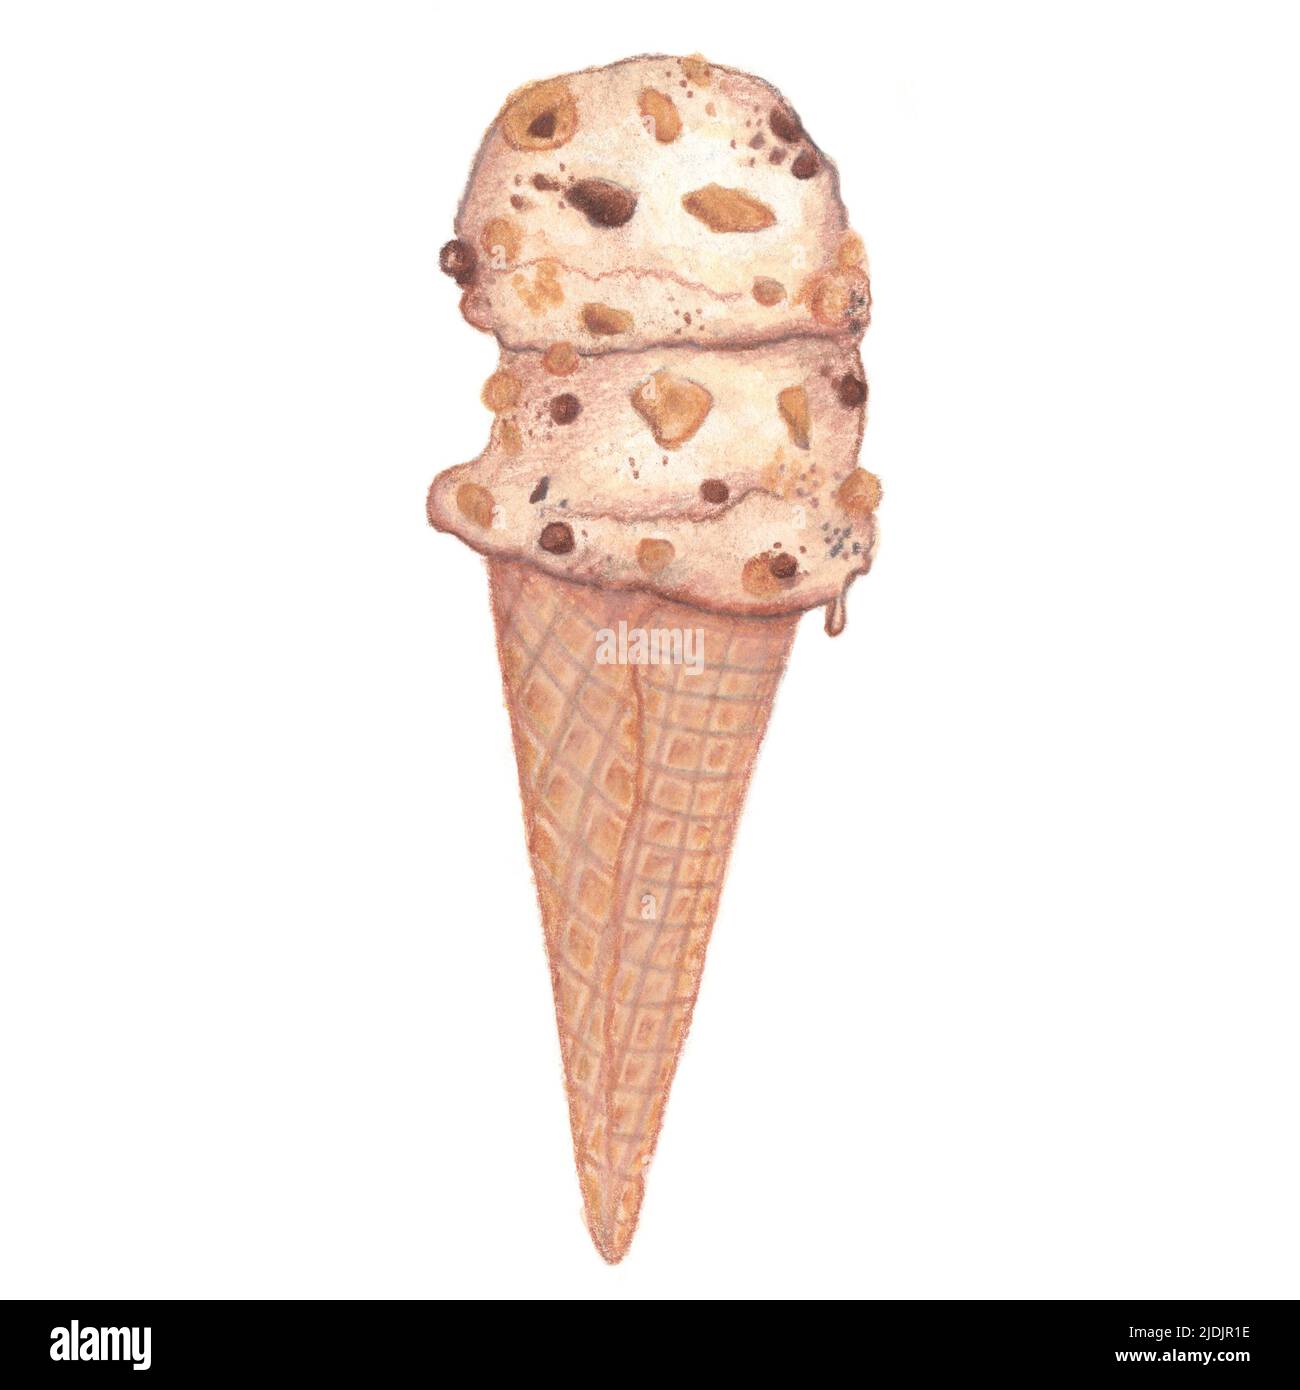 Ilustración de cono de helado sobre fondo blanco. Ilustración de la pieza de clipart dibujada a mano en acuarela. Ideal para tarjetas, menús, fiestas, decoraciones. Foto de stock